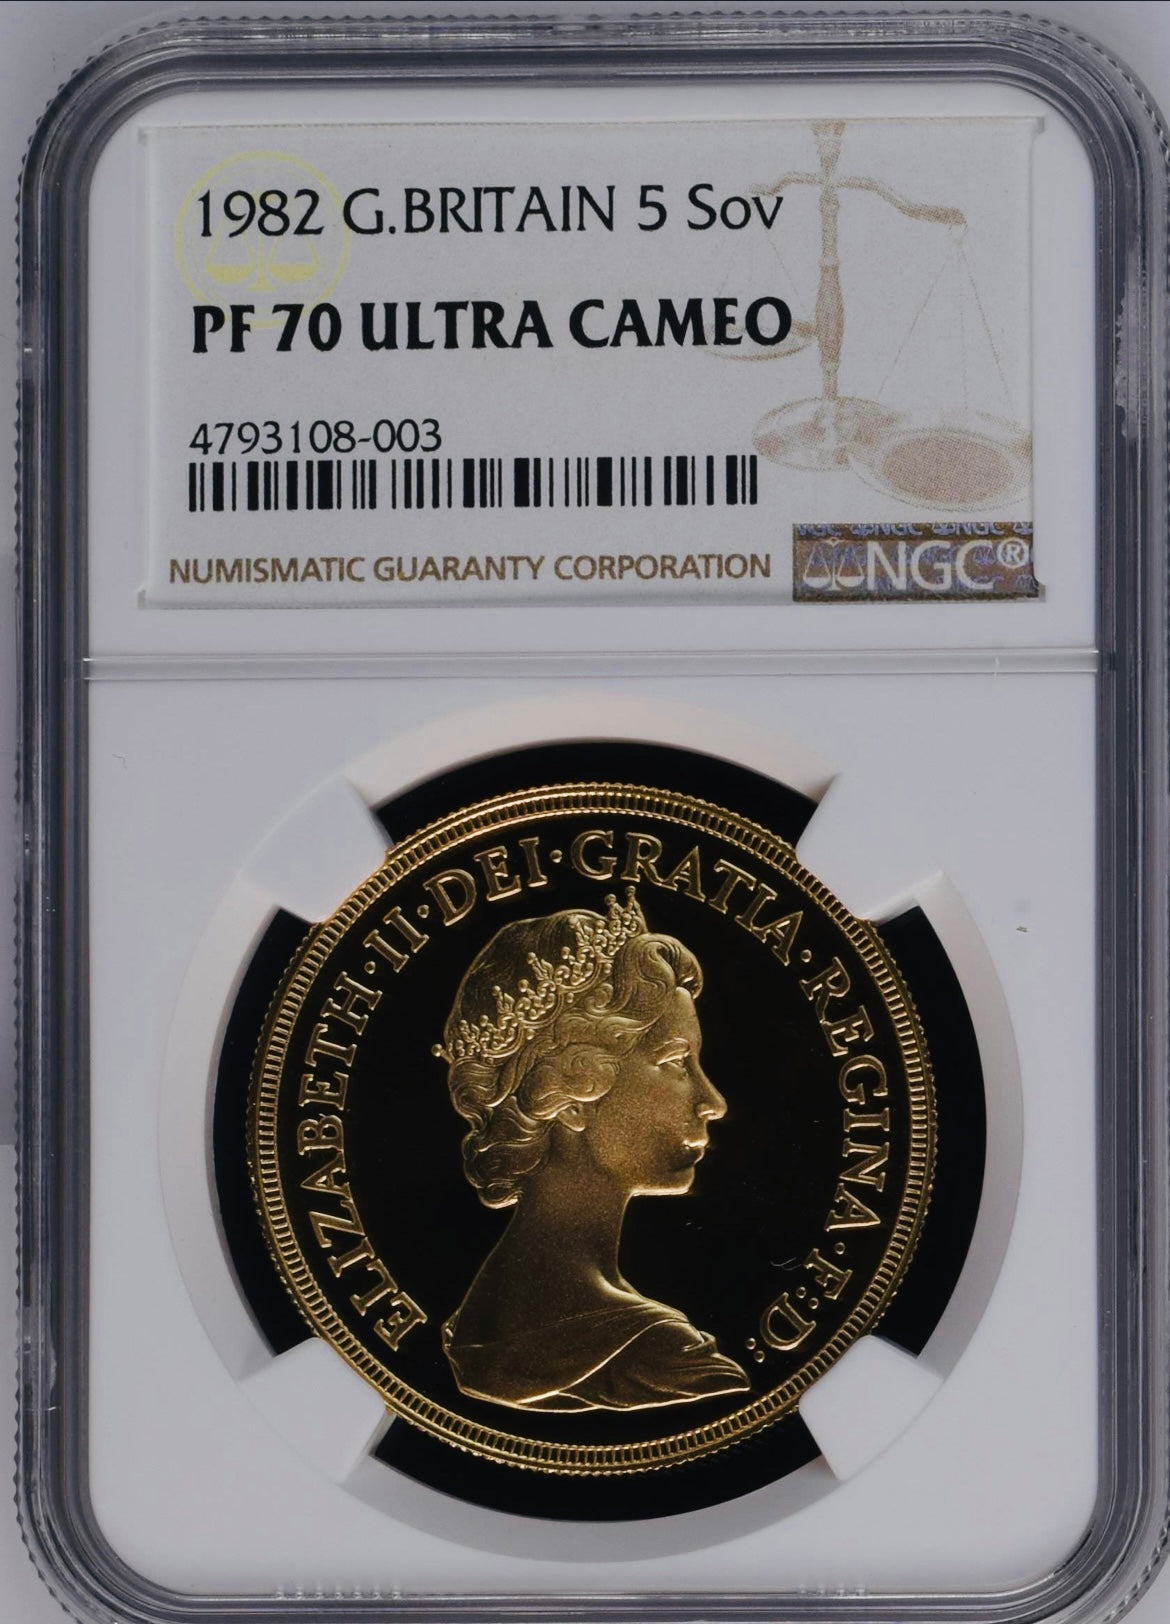 1982年 エリザベス2世 5ポンド金貨(NGC/PF70 ULTRA CAMEO) – cocoin.jp